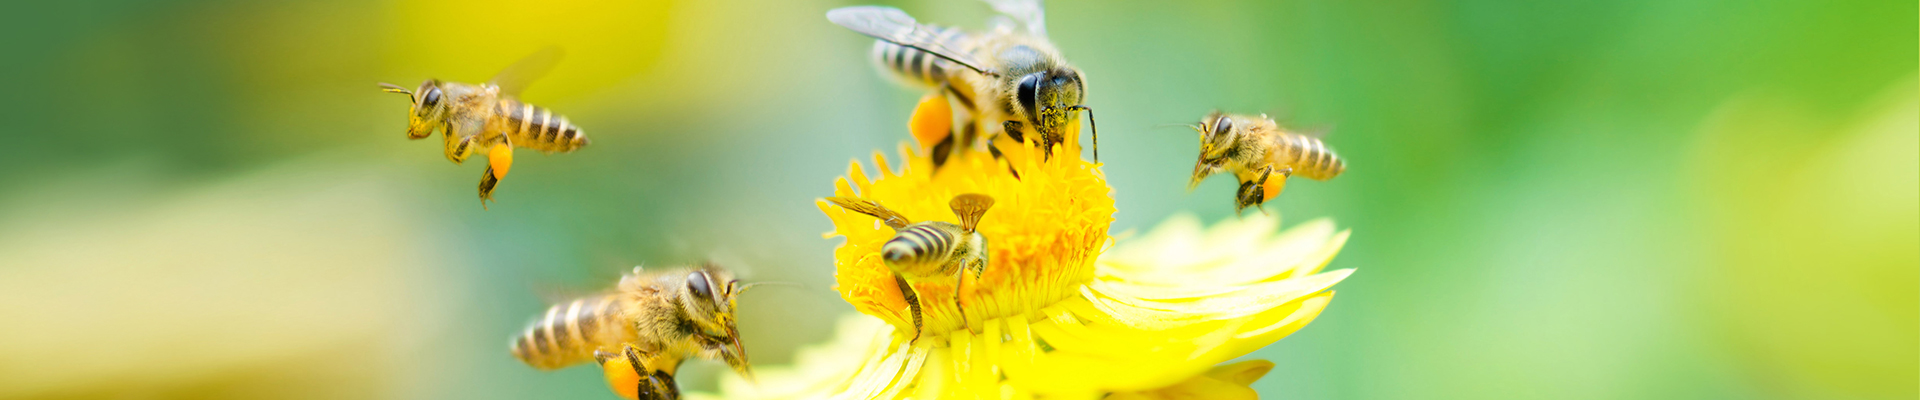 Bee Exterminator MD PA DE NJ